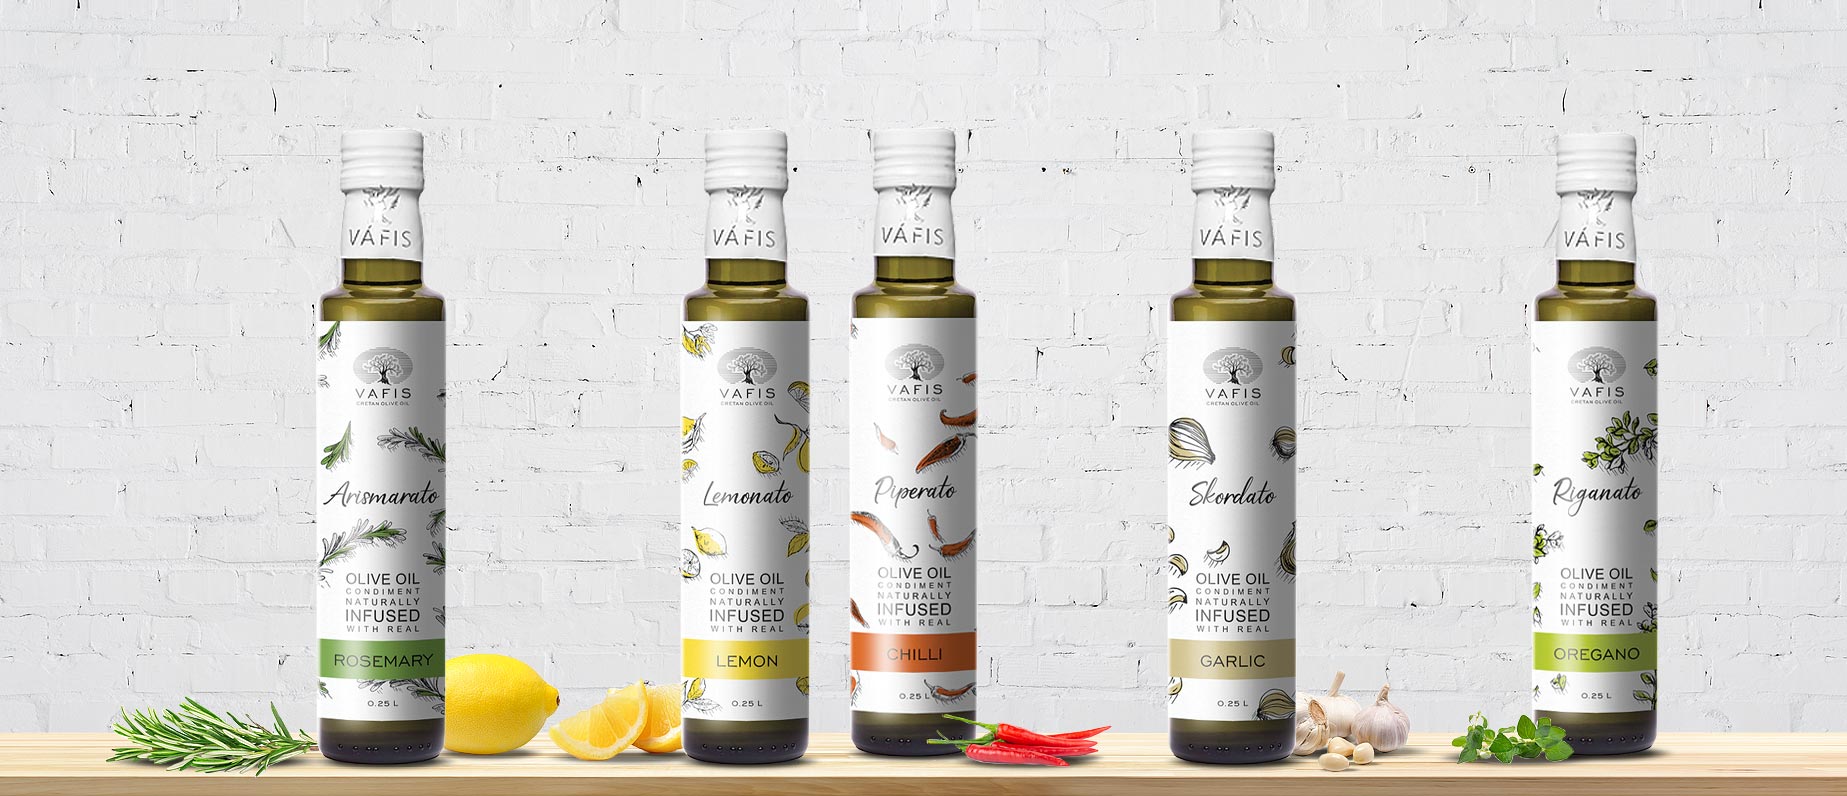 Ароматизированное масло Vafis На основе натурального оливкового масла высшего качества